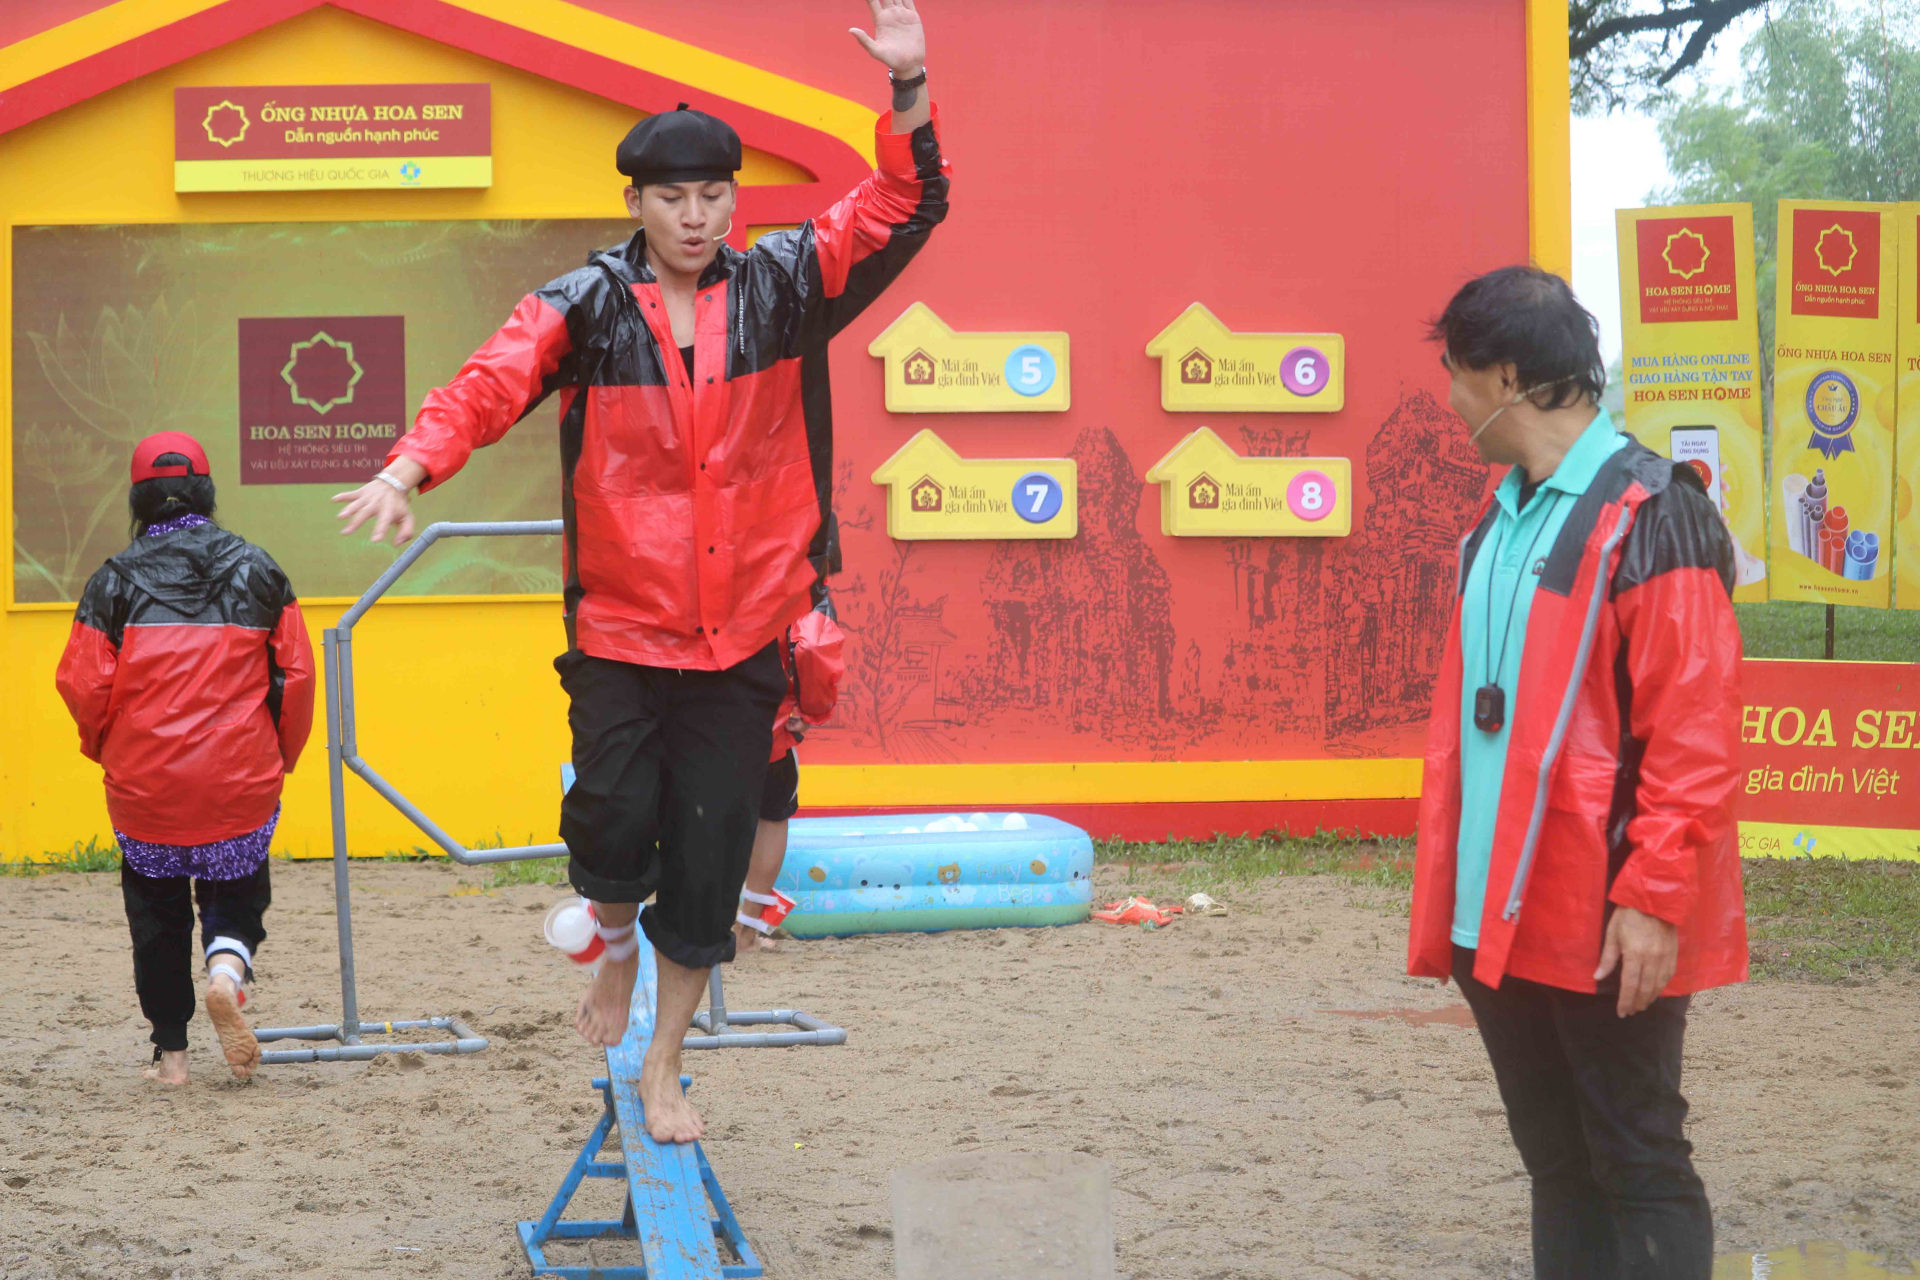 NSND Thanh Lam dầm mưa, nổ lực hết mình cùng Ali Hoàng Dương chiến thắng thử thách để đạt giải thưởng cho trẻ em nghèo - ảnh 2